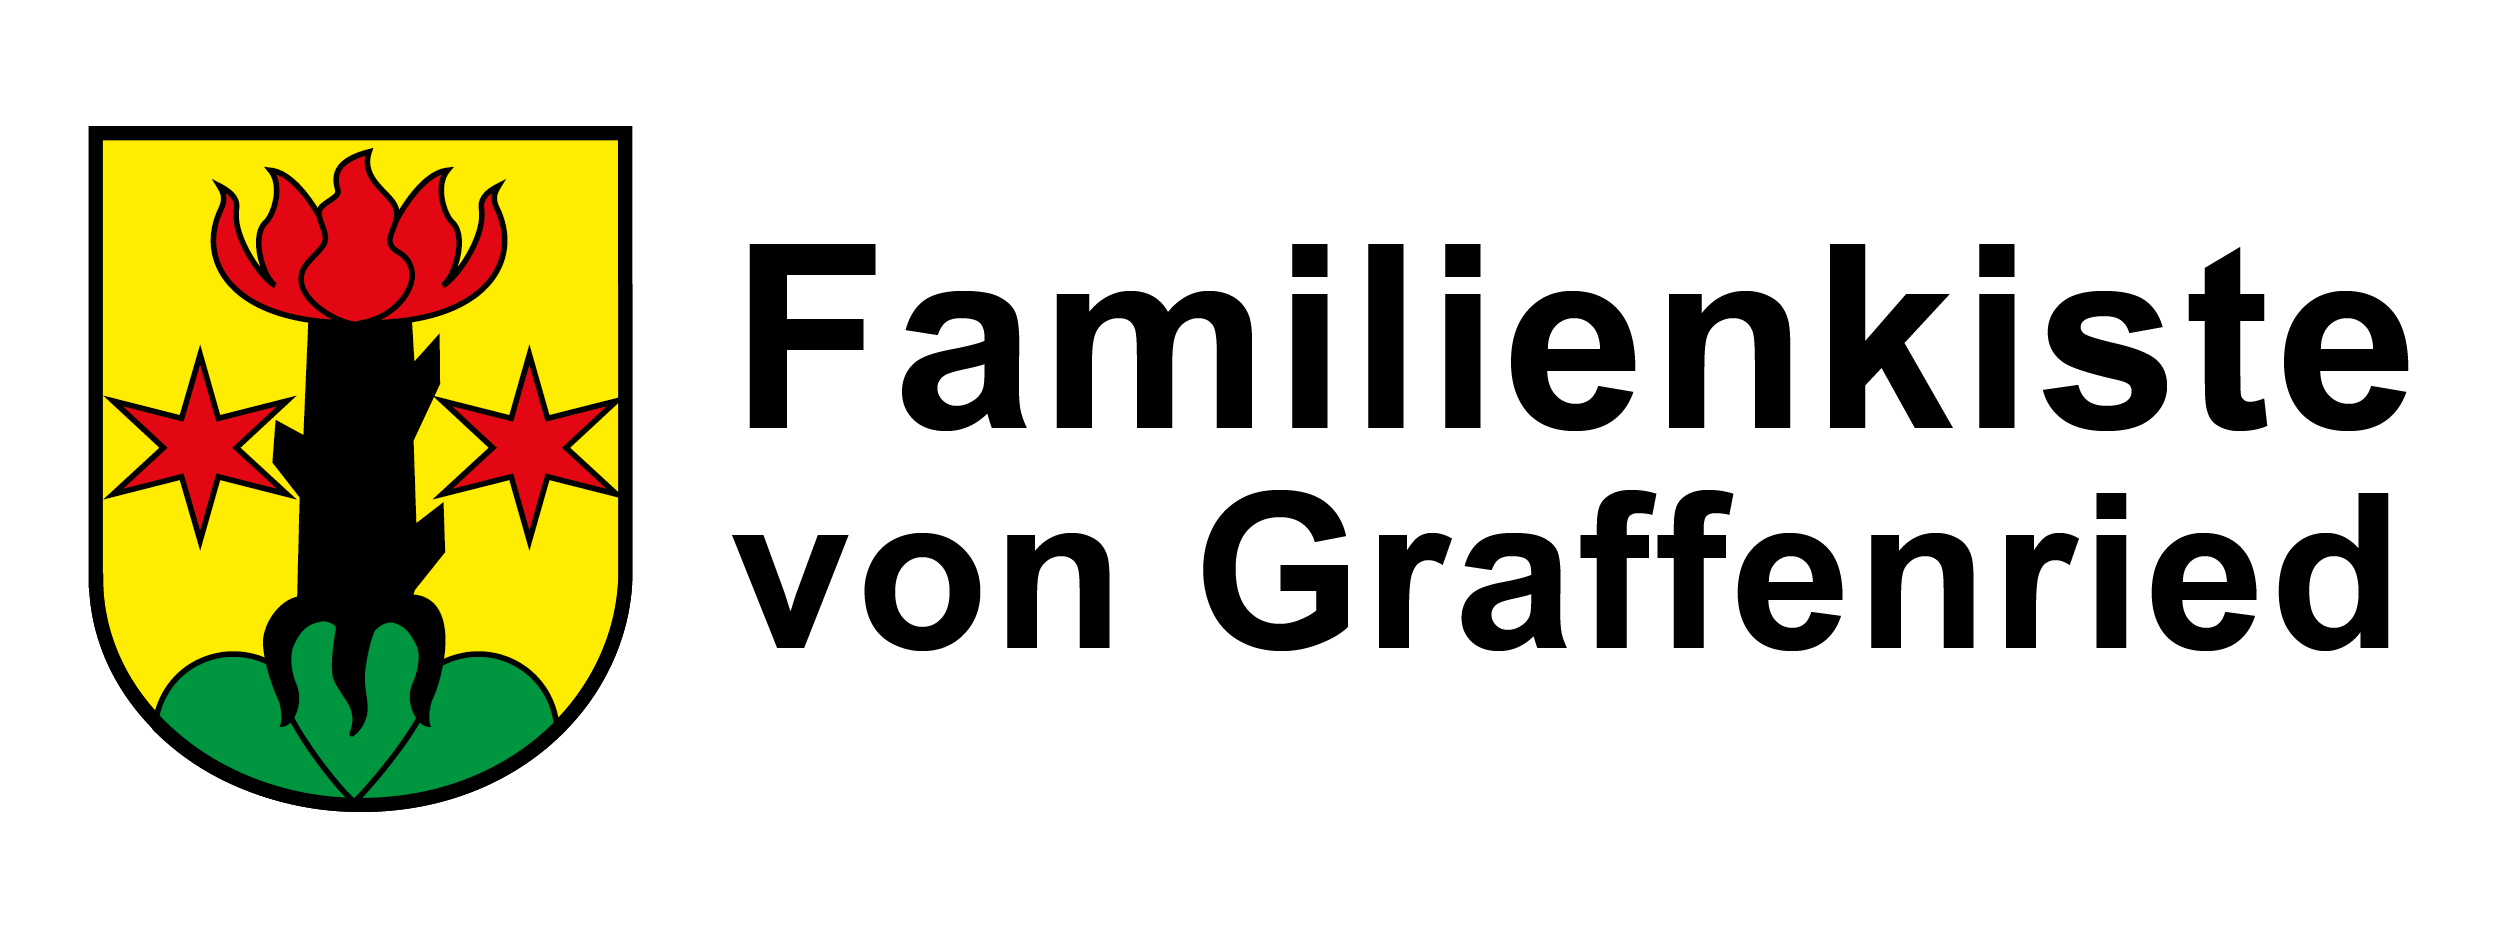 Familienkiste von Graffenried Logo